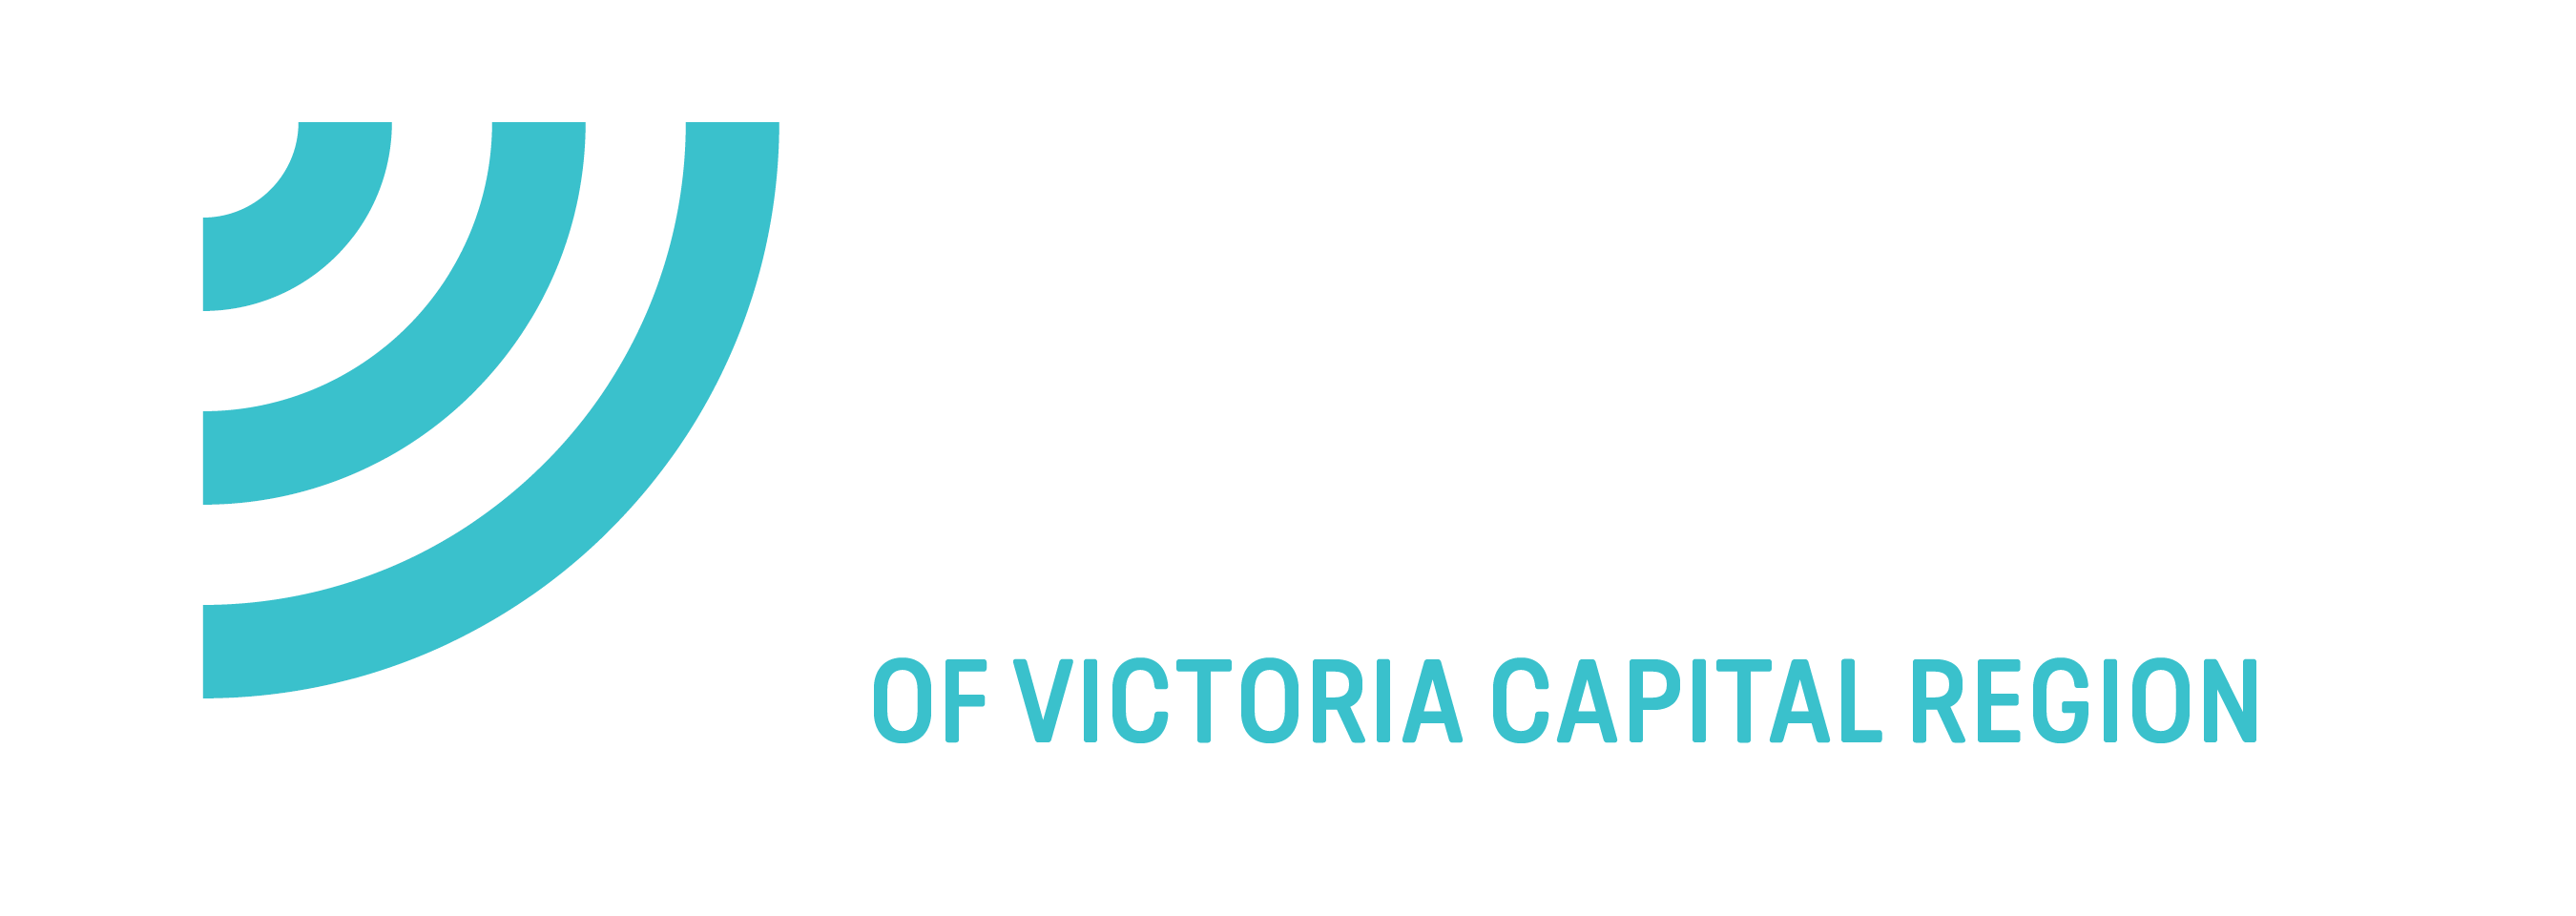 B You Participant Pre-Program Survey - Big Brothers Big Sisters of Victoria Capital Region